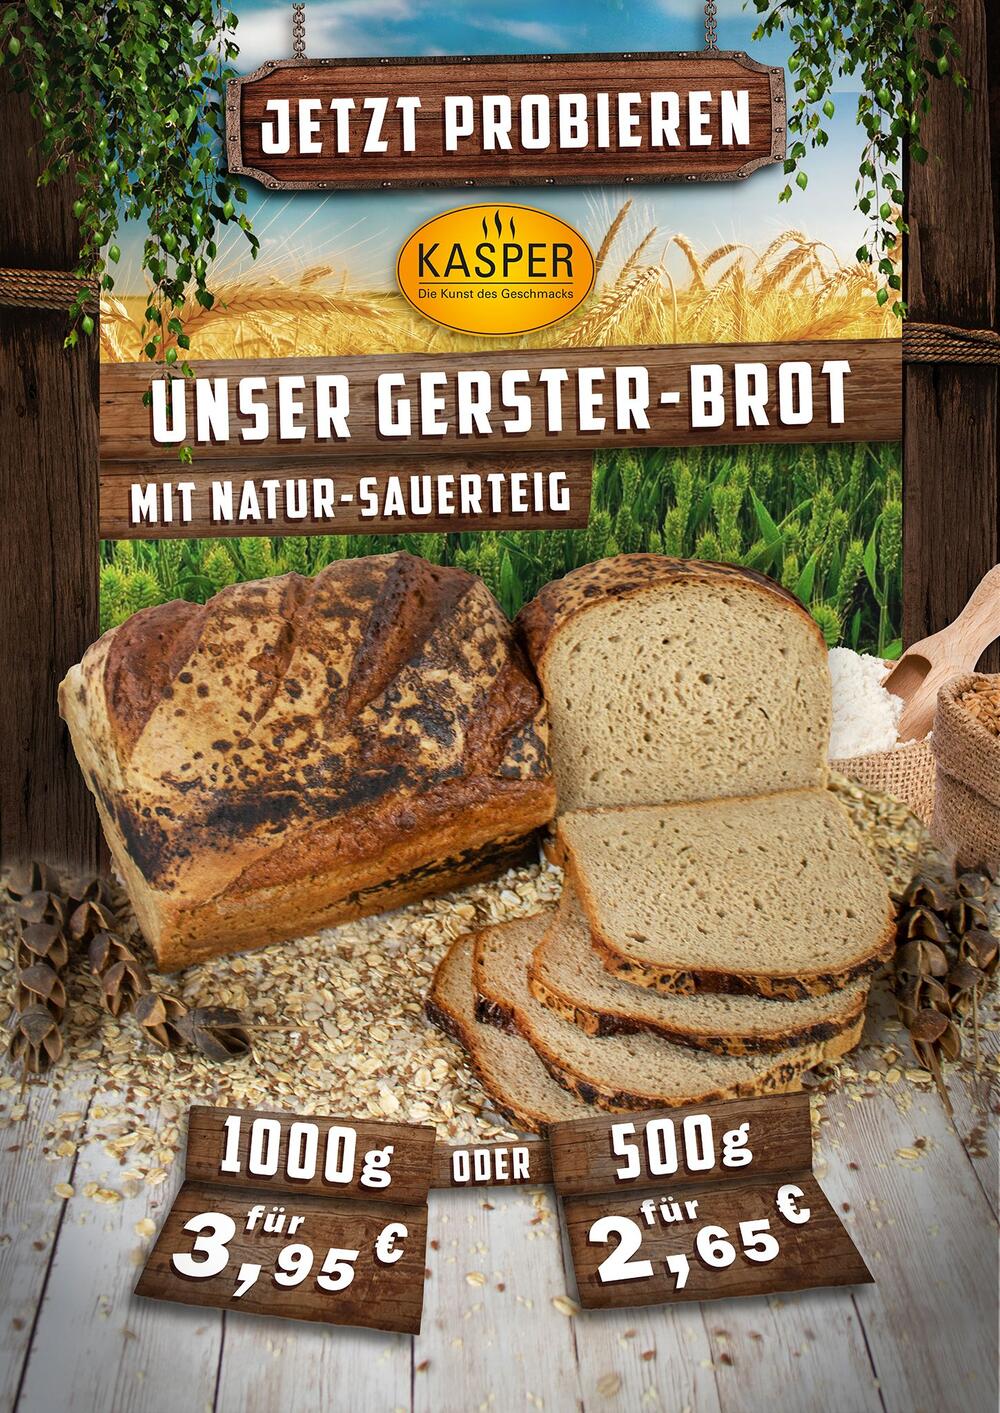 Bäckerei Kasper Hannover Gersterbrot Bio Natursauerteig Spezialbrot Vahrenwalderstrasse 66 Handgemachte Backwaren